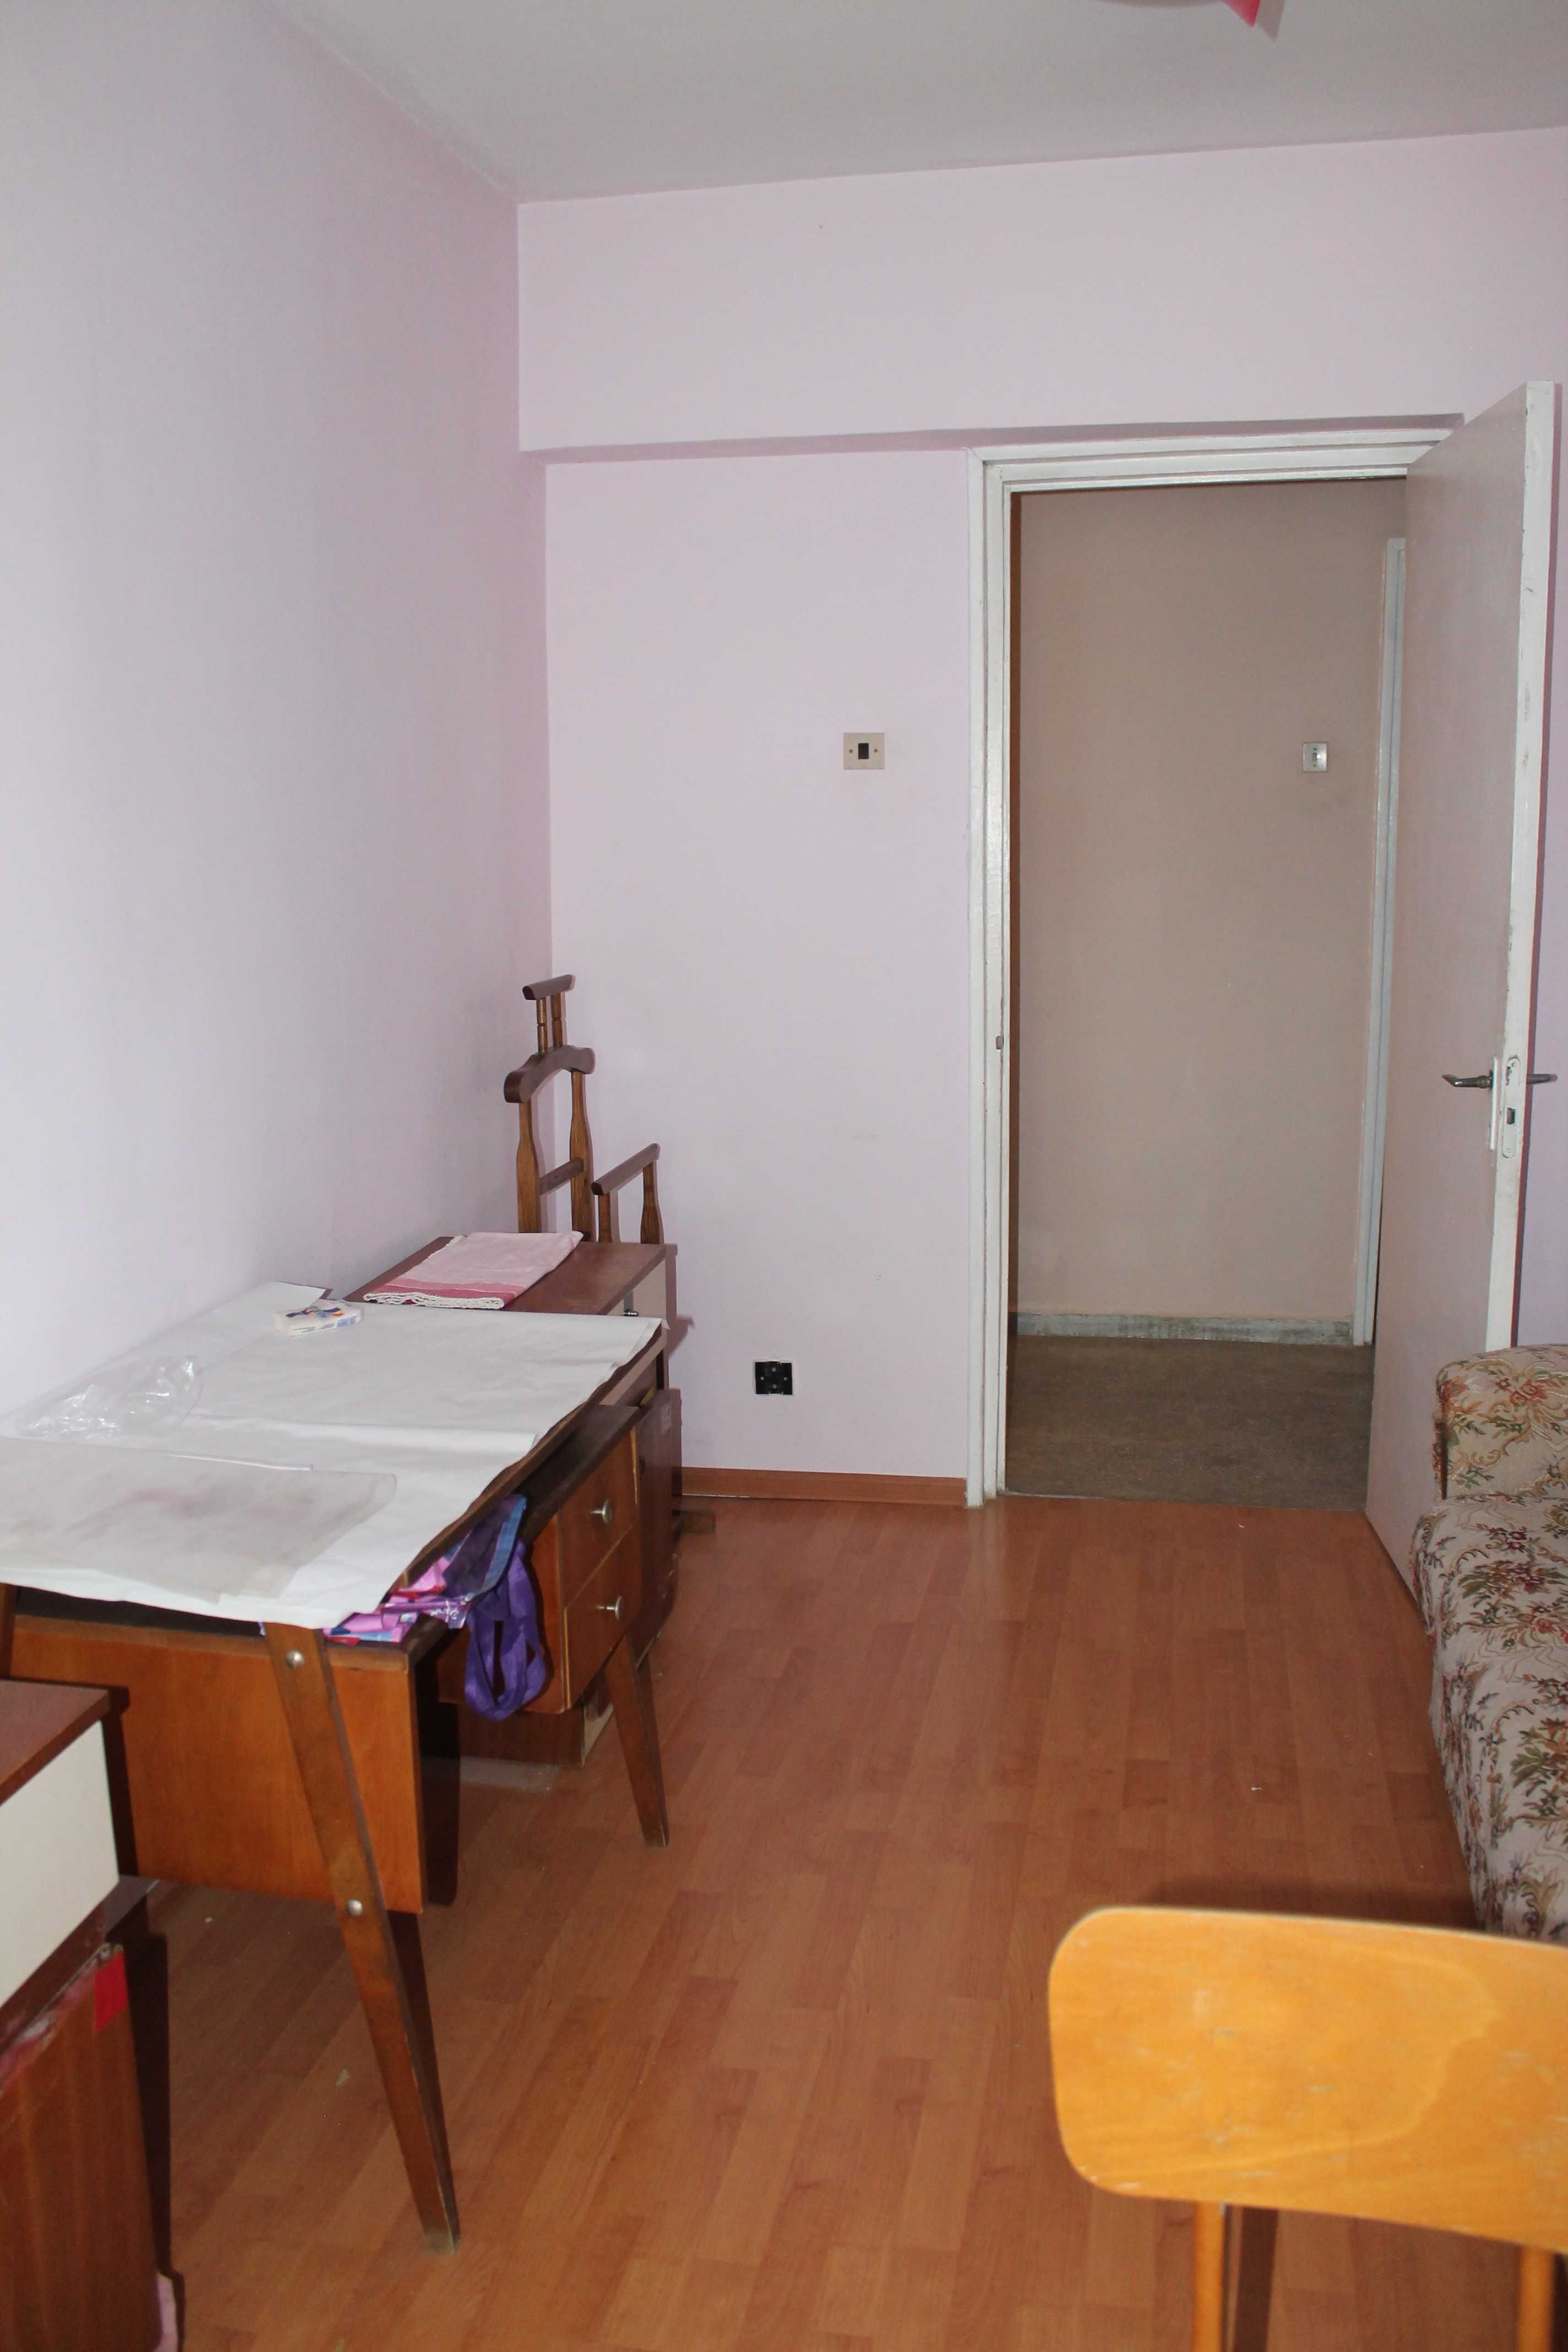 Apartament 3 camere decomandat zona Dacia